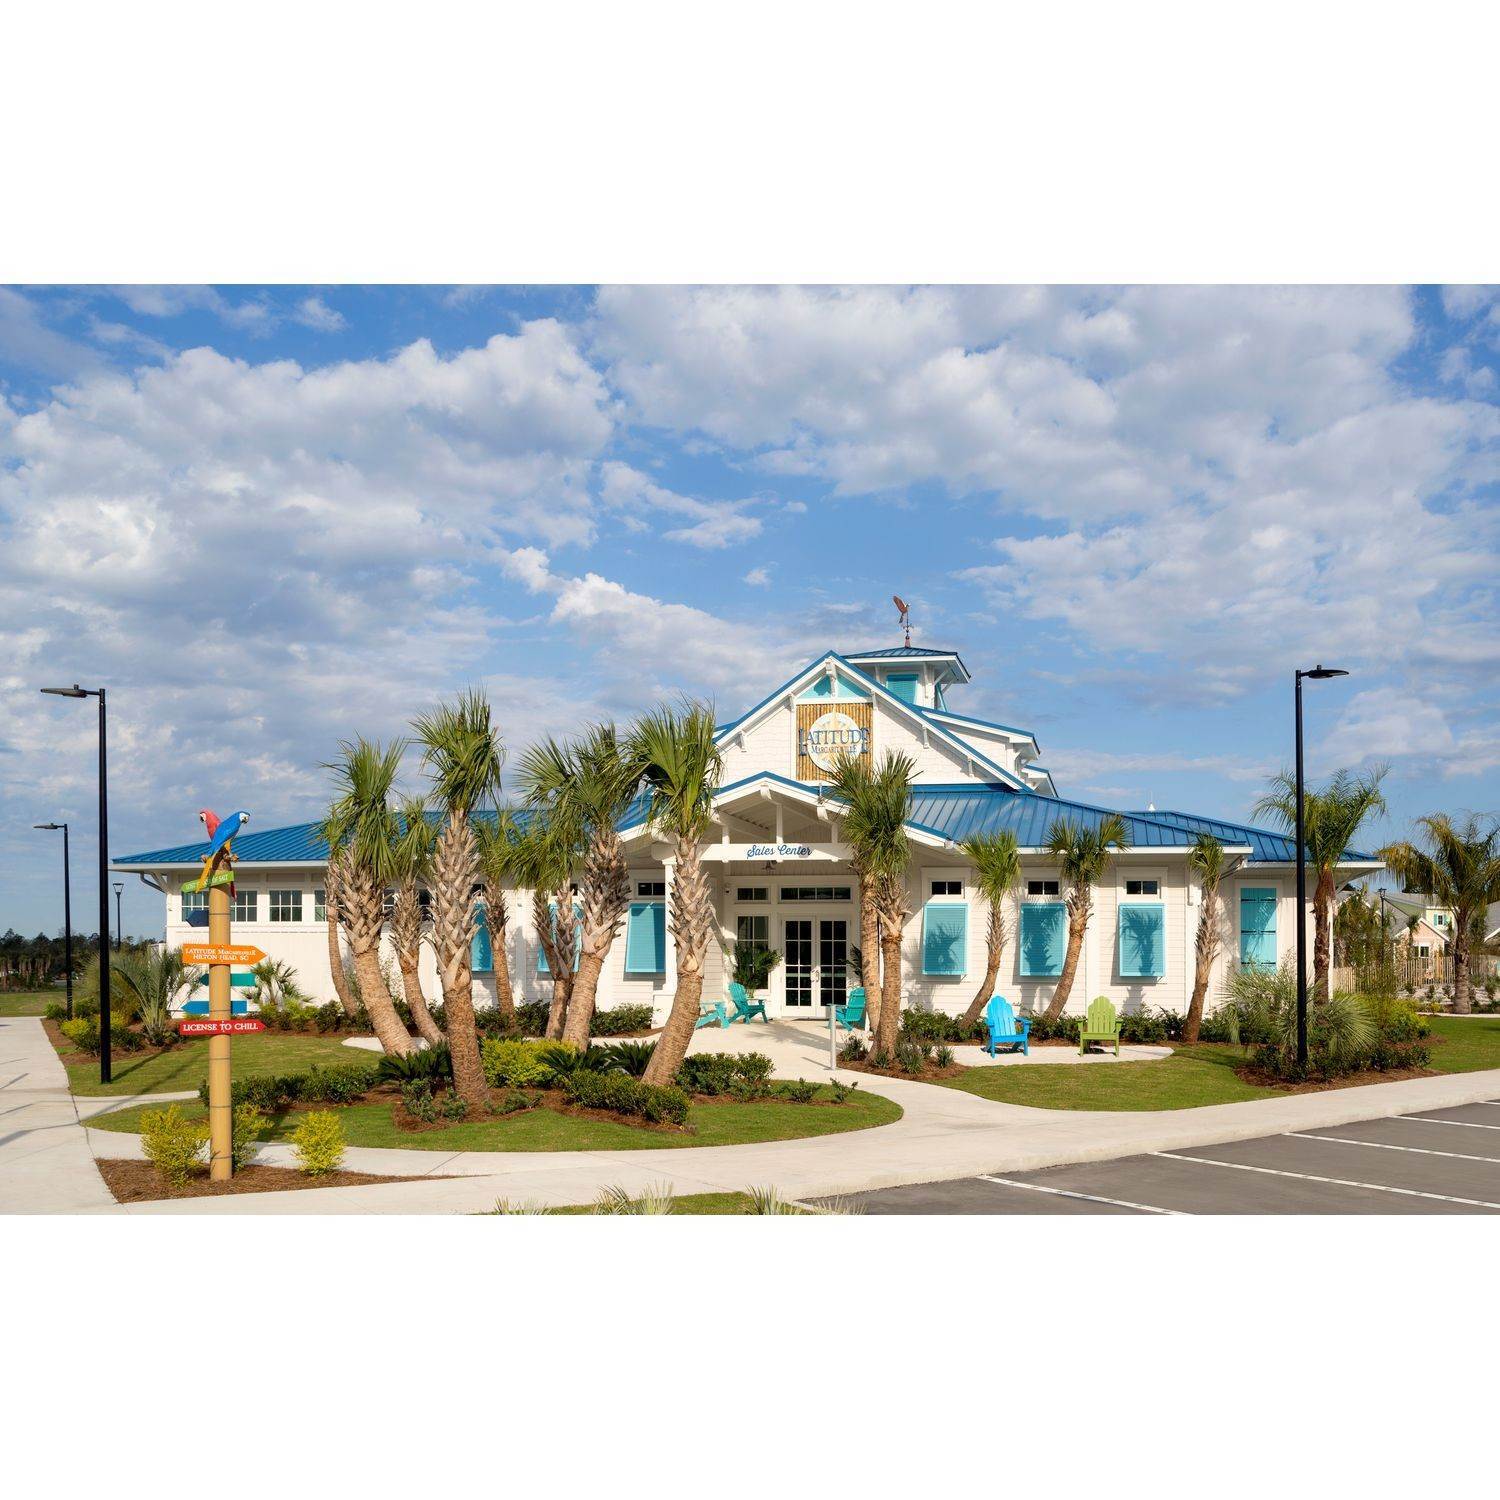 7. Latitude Margaritaville Watersound edificio en 9201 Highway 79, Panama City Beach, FL 32413